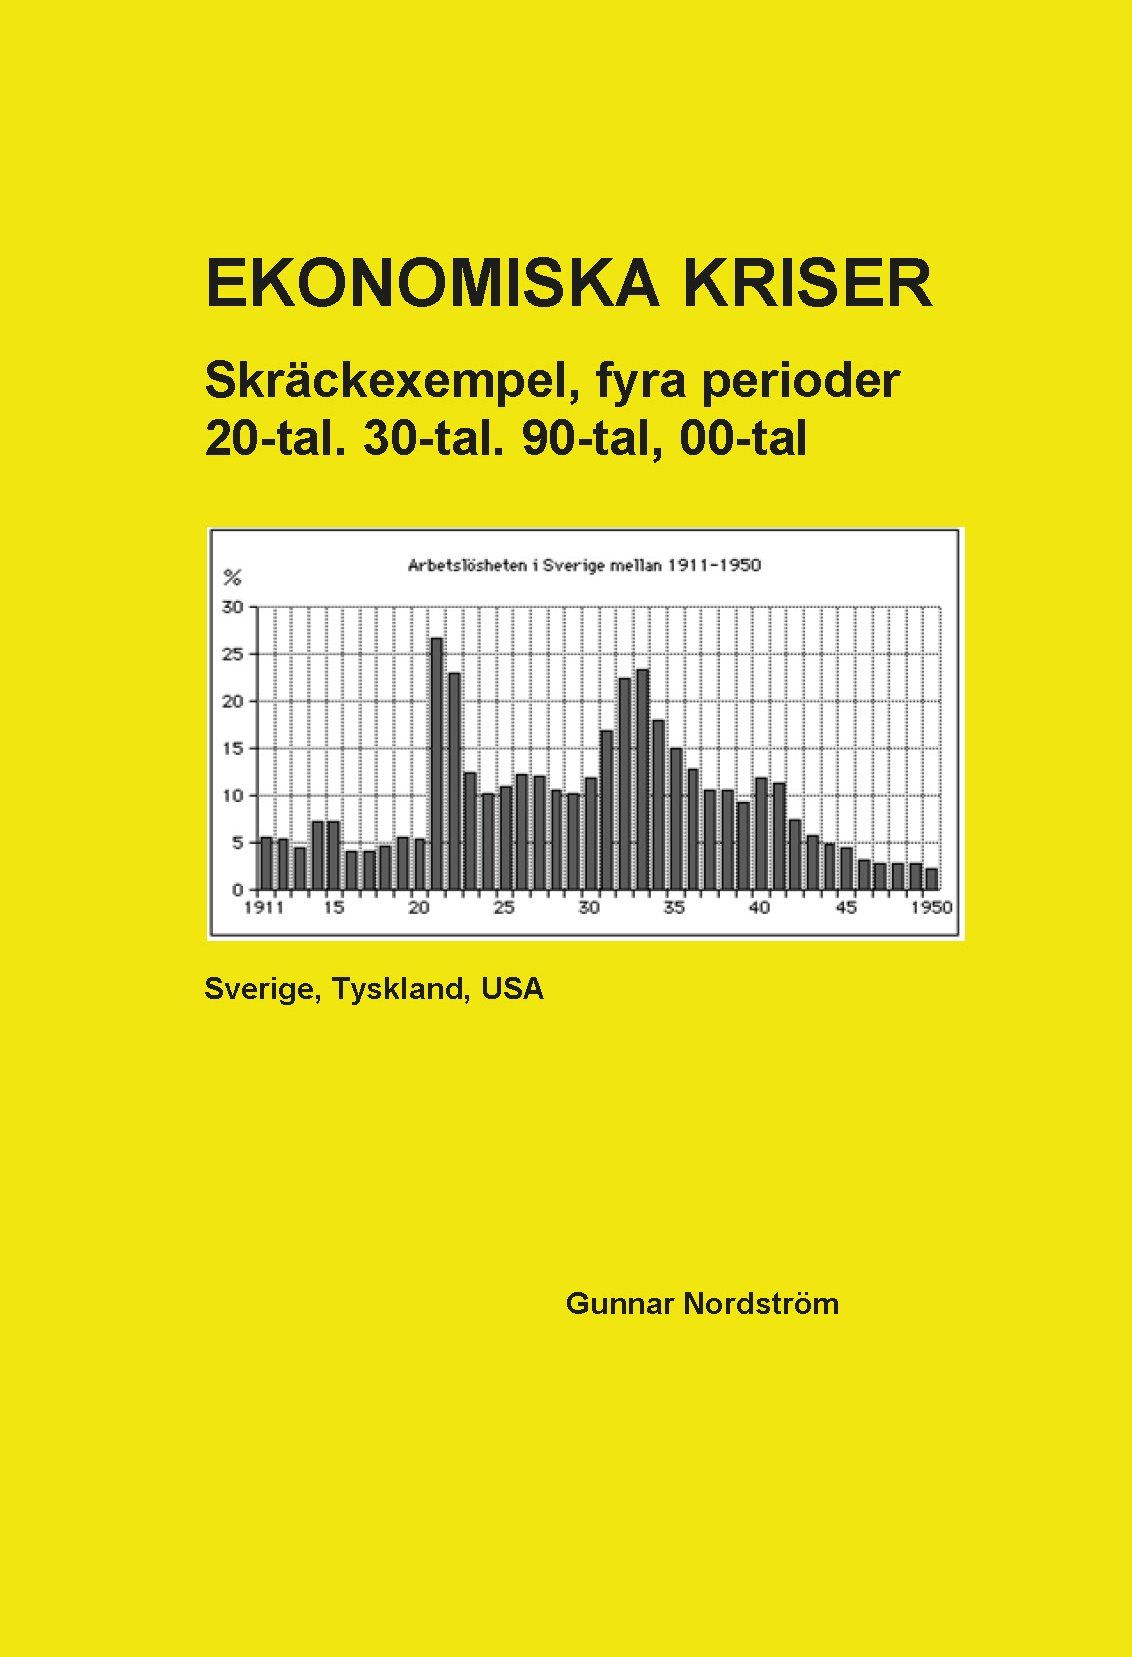 Ekonomiska kriser, e-bok av Gunnar Nordström